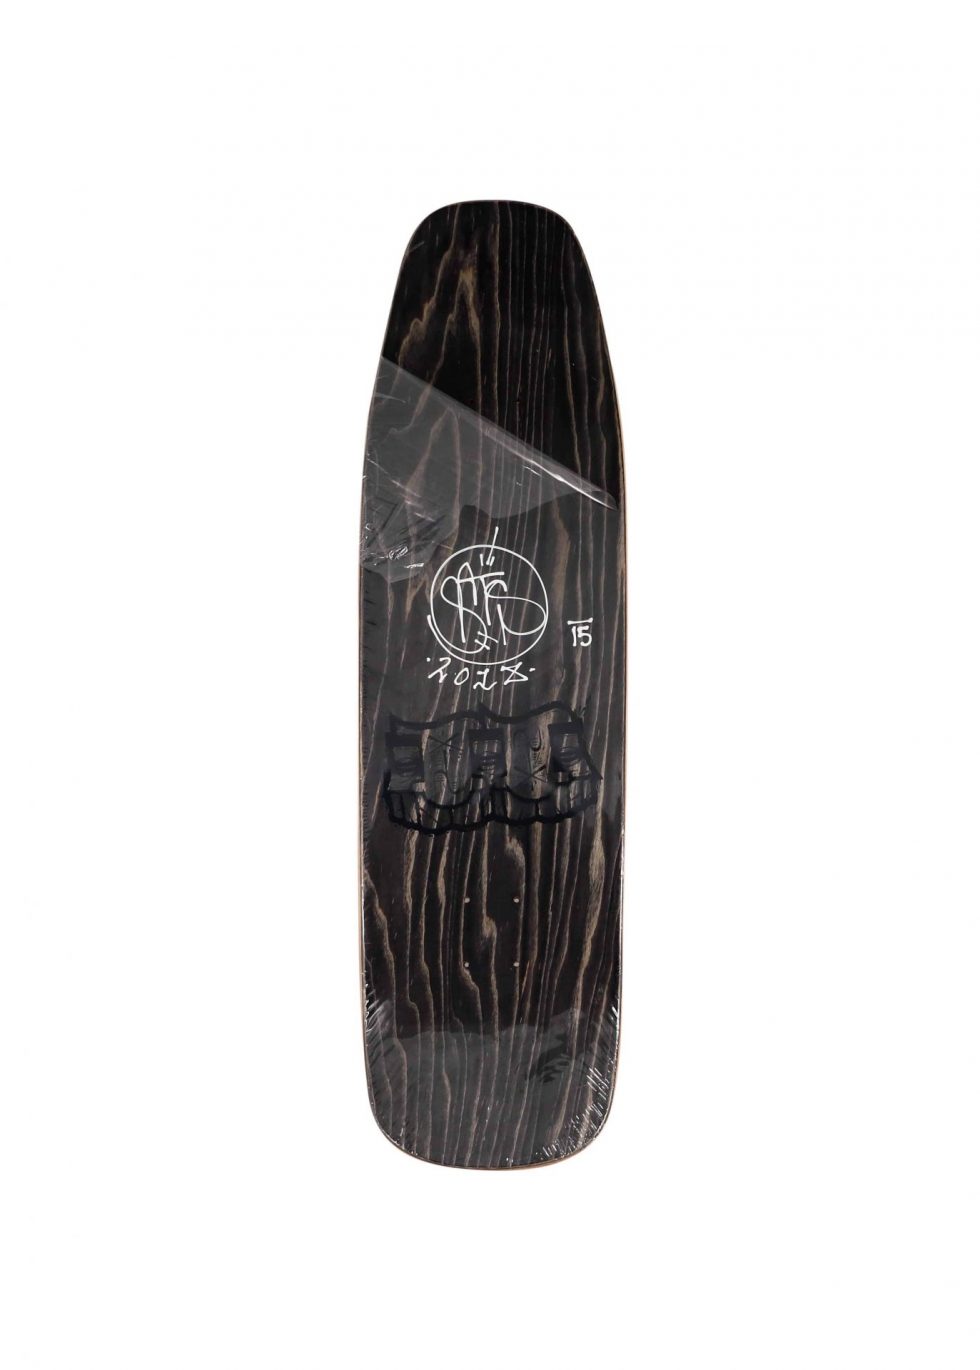 Lot #14607 – GATS Cruiser Gold Glitter Foil Skateboard Skate Deck Limited Edition GATS GATS Cruiser Skateboard